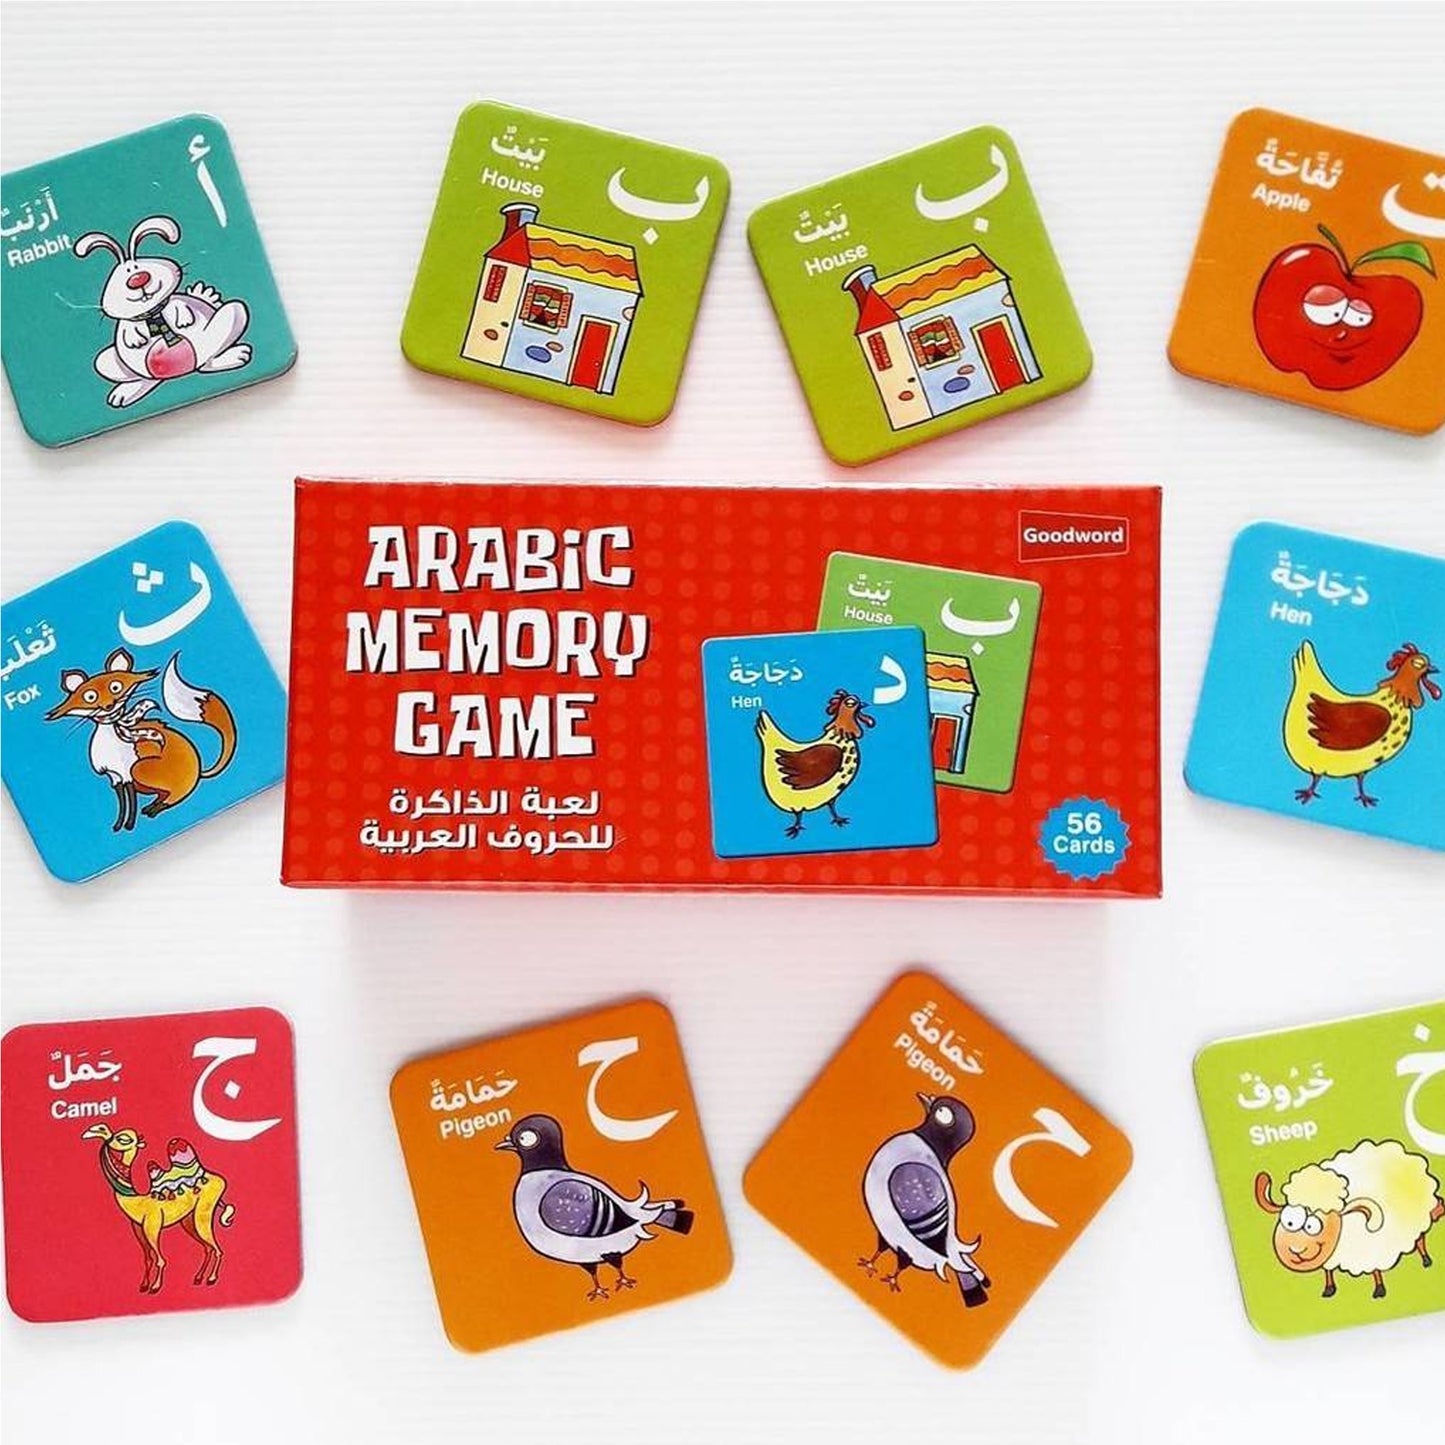 Arabic memory game